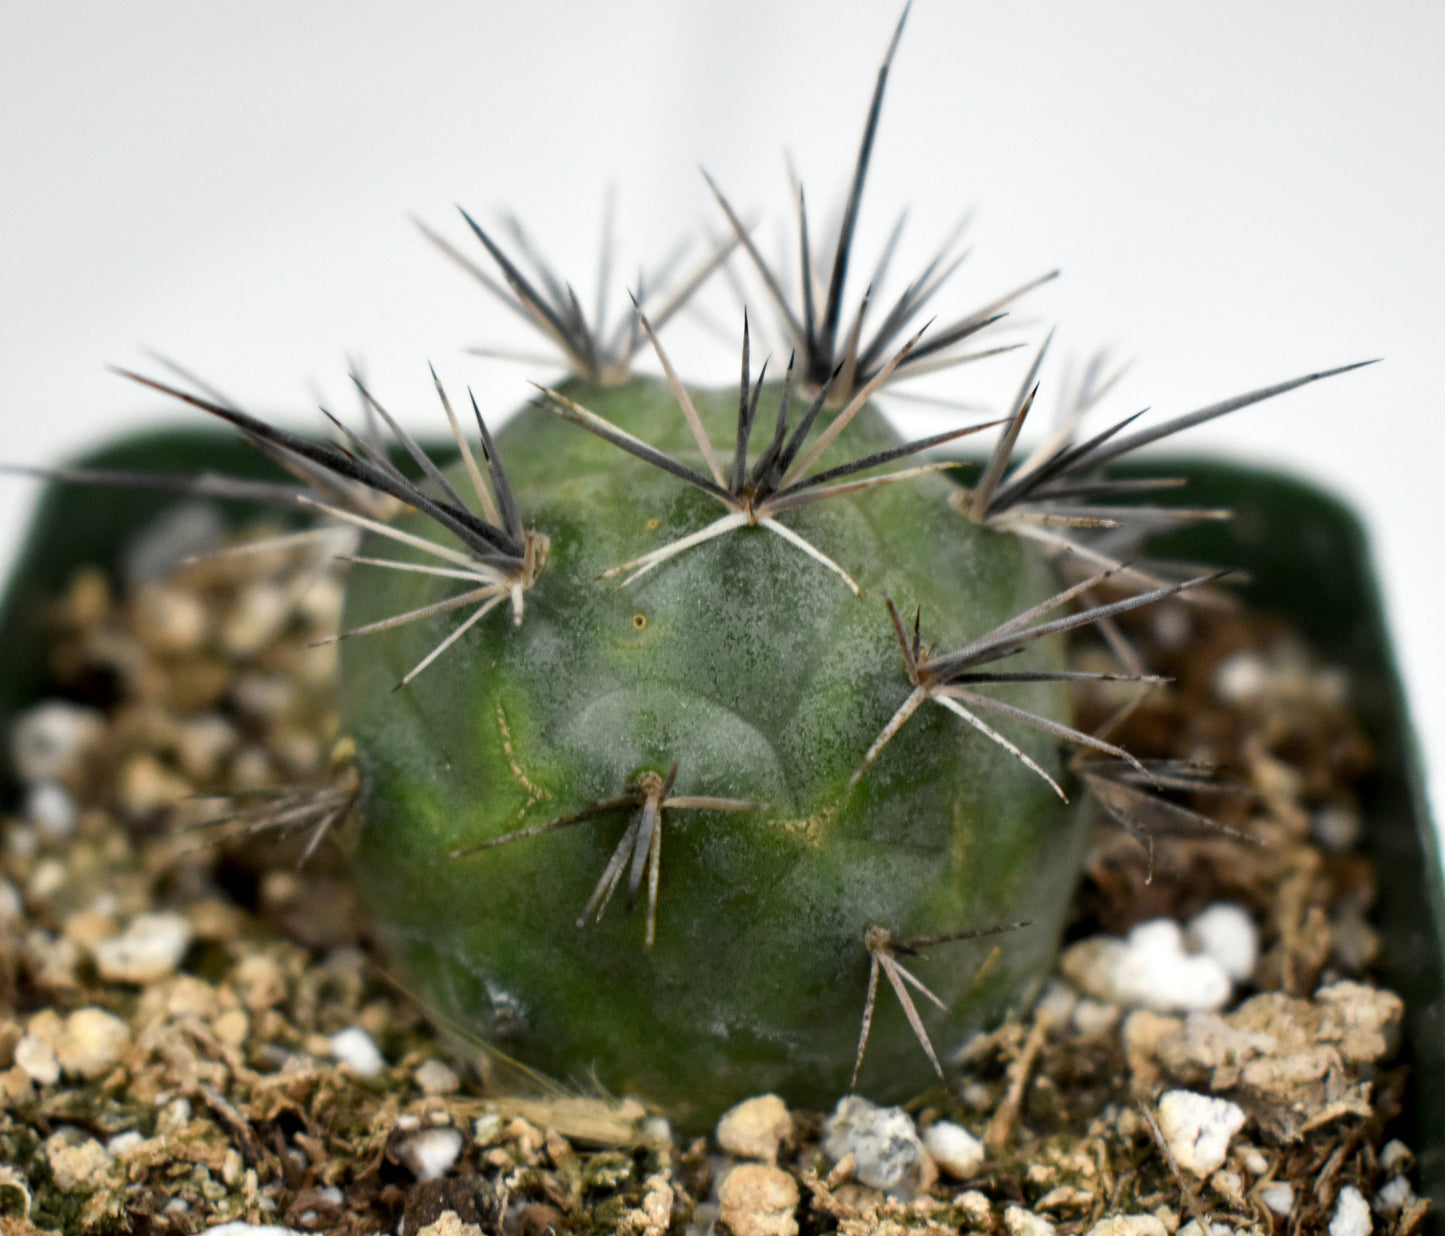 Tephrocactus alexanderi Live Cactus In 4 Inch